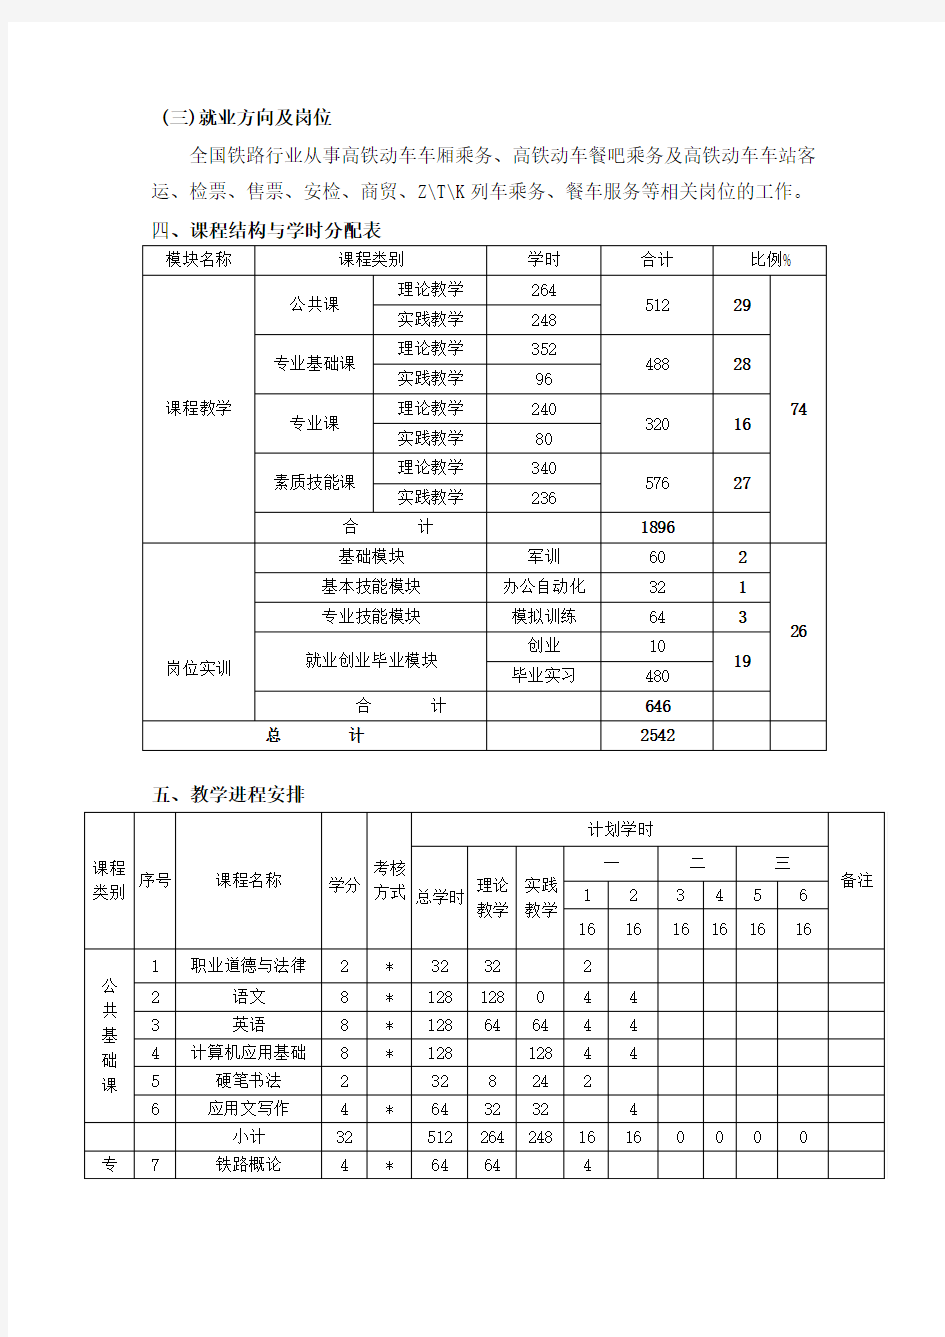 1 高铁服务专业教学计划(中职).doc33333